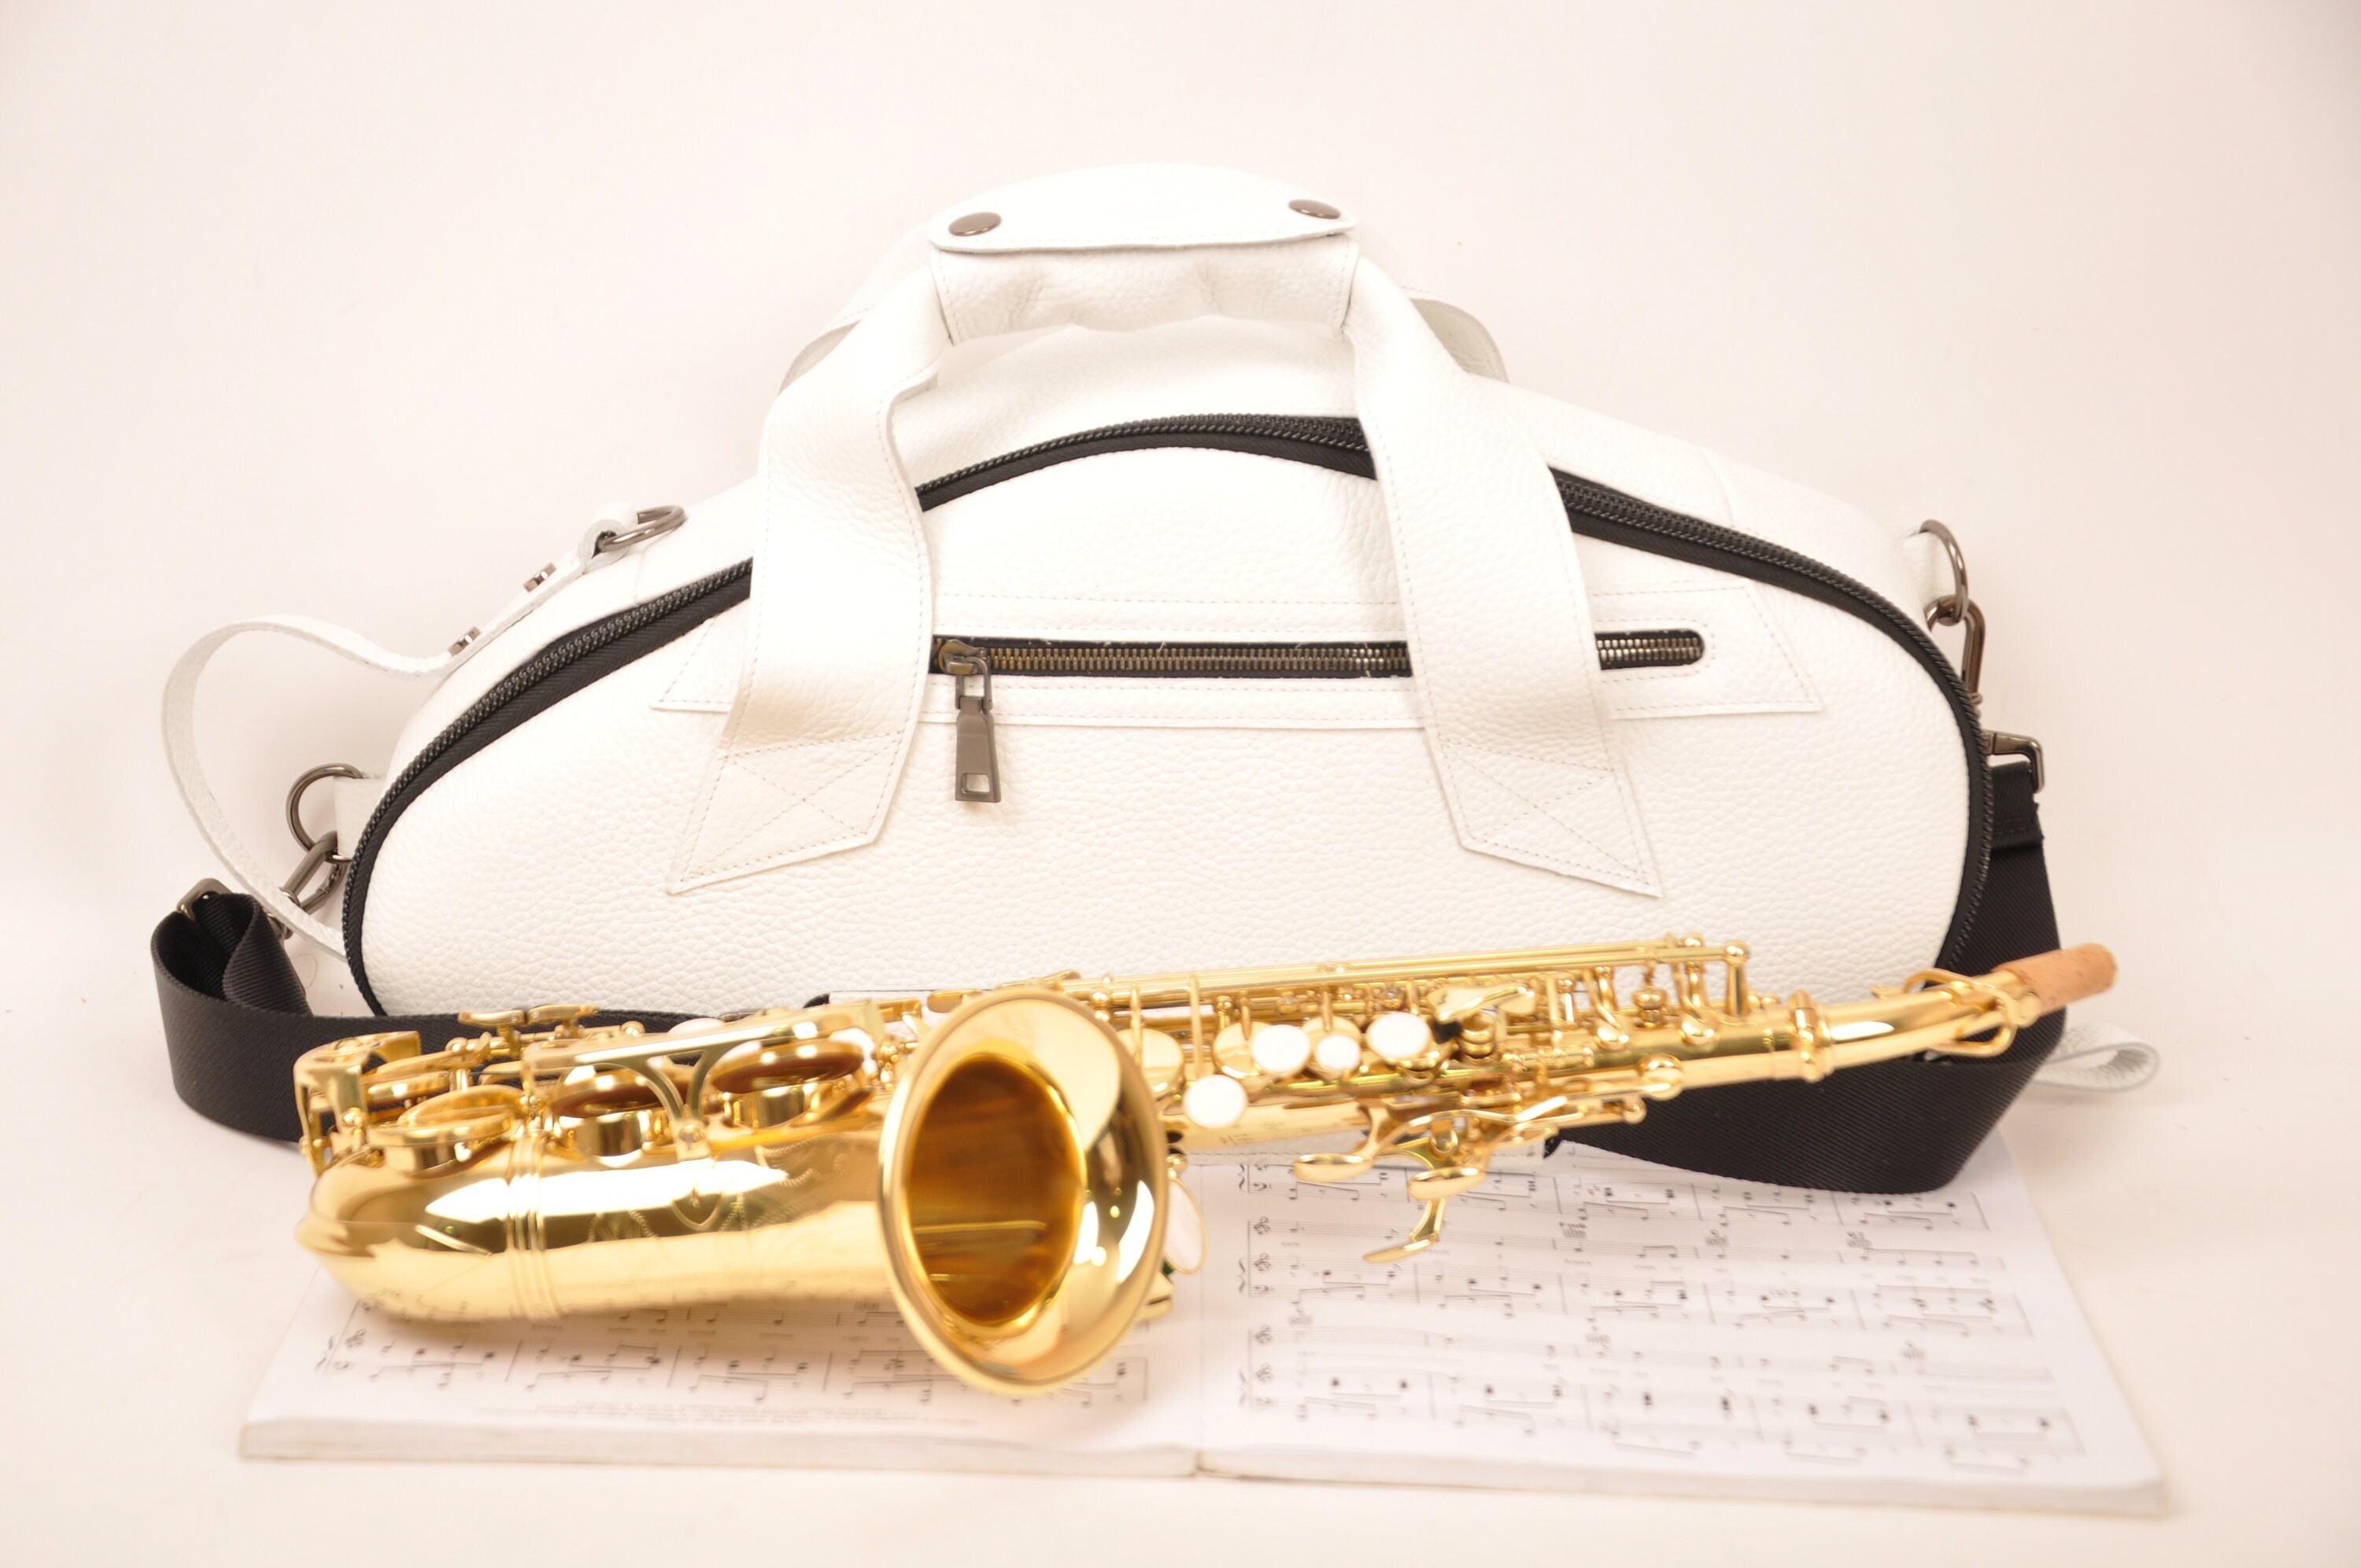 Kit de saxophone de poche léger Mini instrument à vent Sax avec